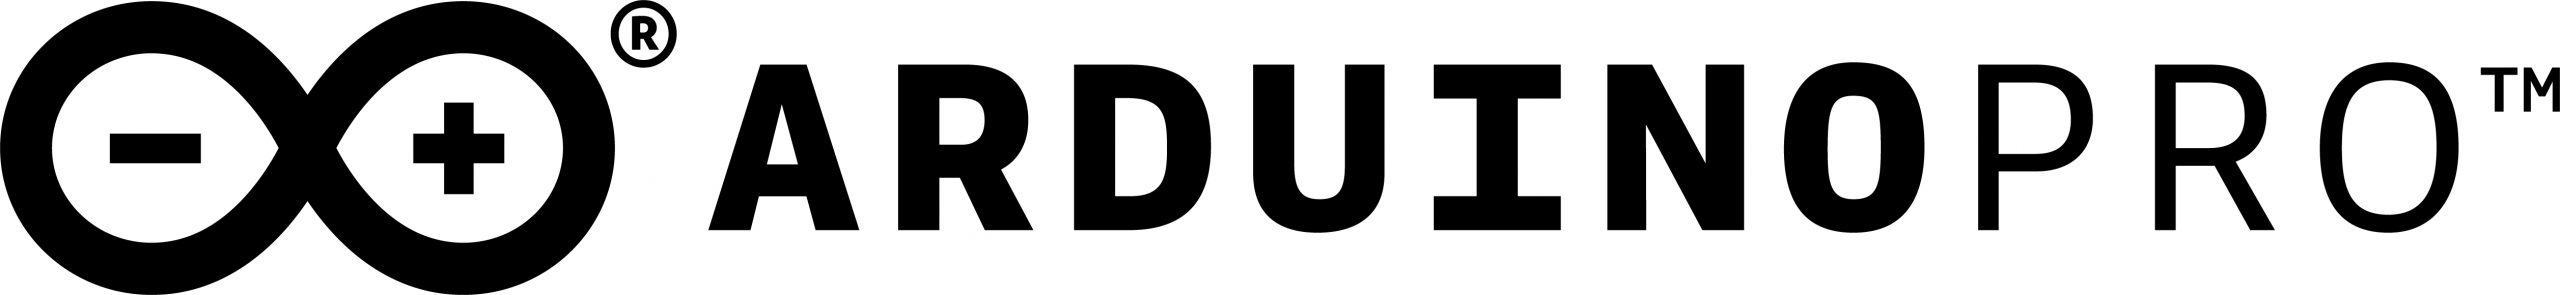 Logo-Arduino-Pro-inline-black